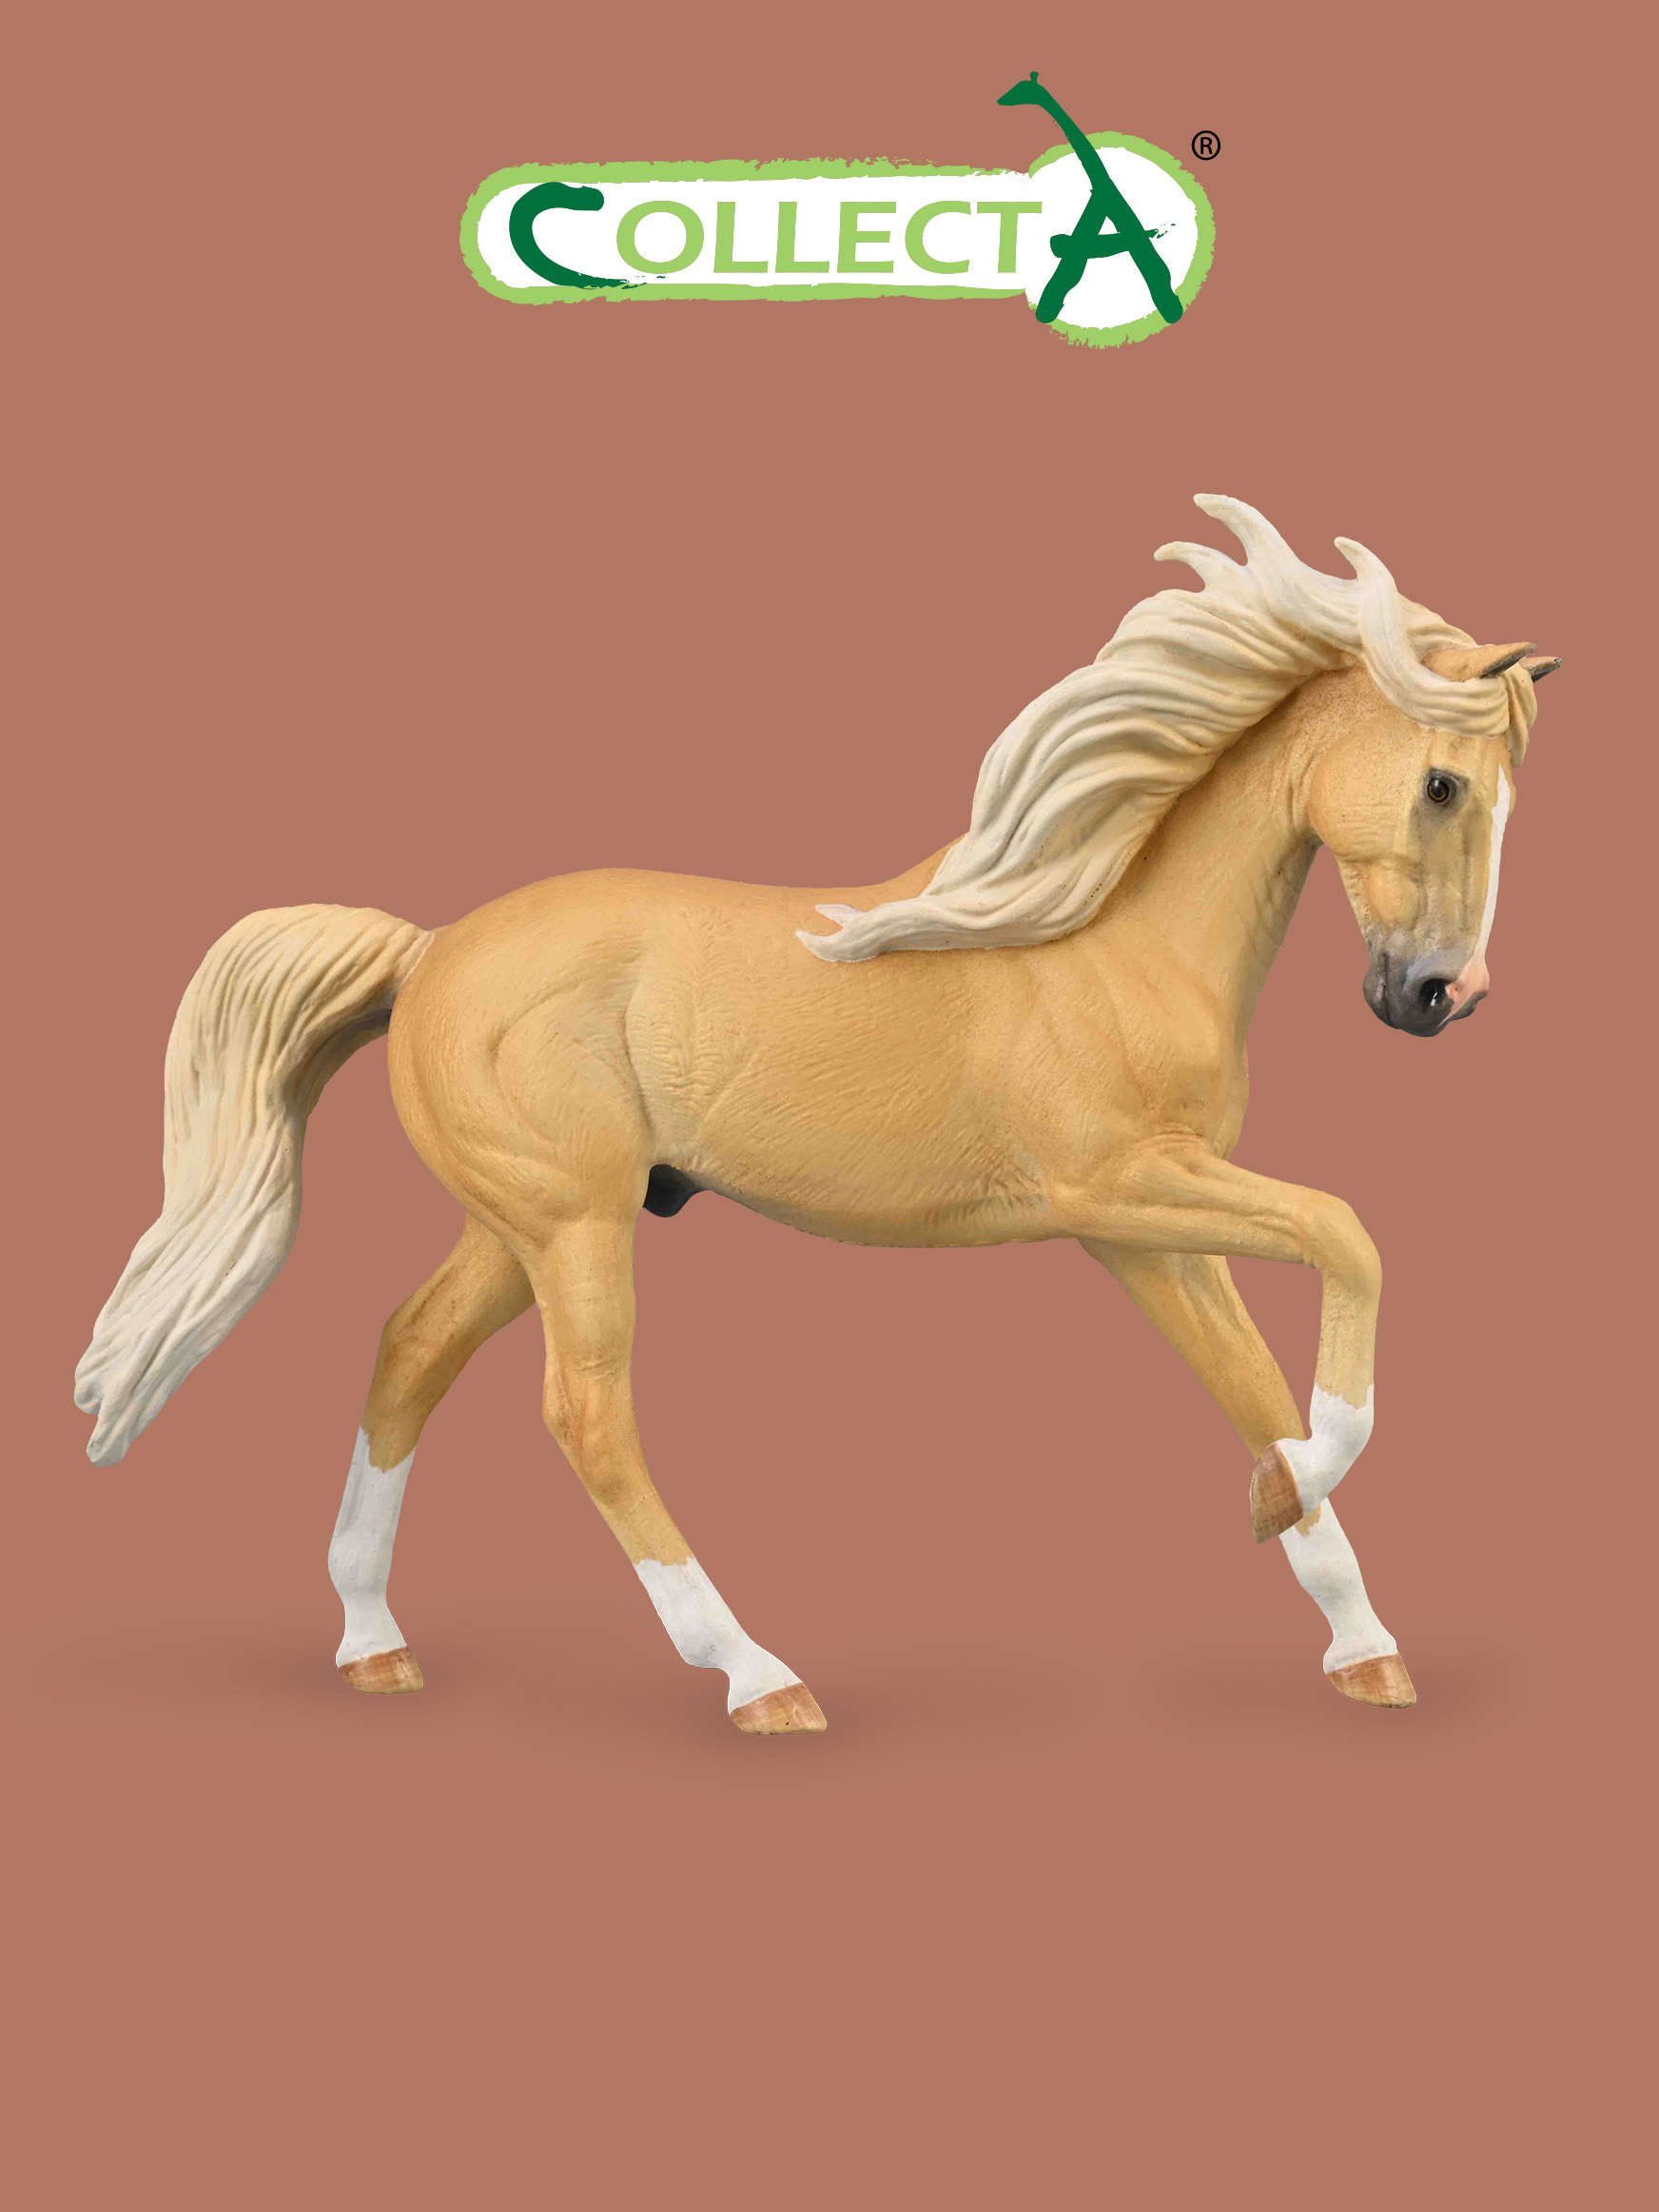 Фигурка Collecta животного Лошадь Андалузский жеребец - Паломино фигурка collecta жеребец эксмурский пони